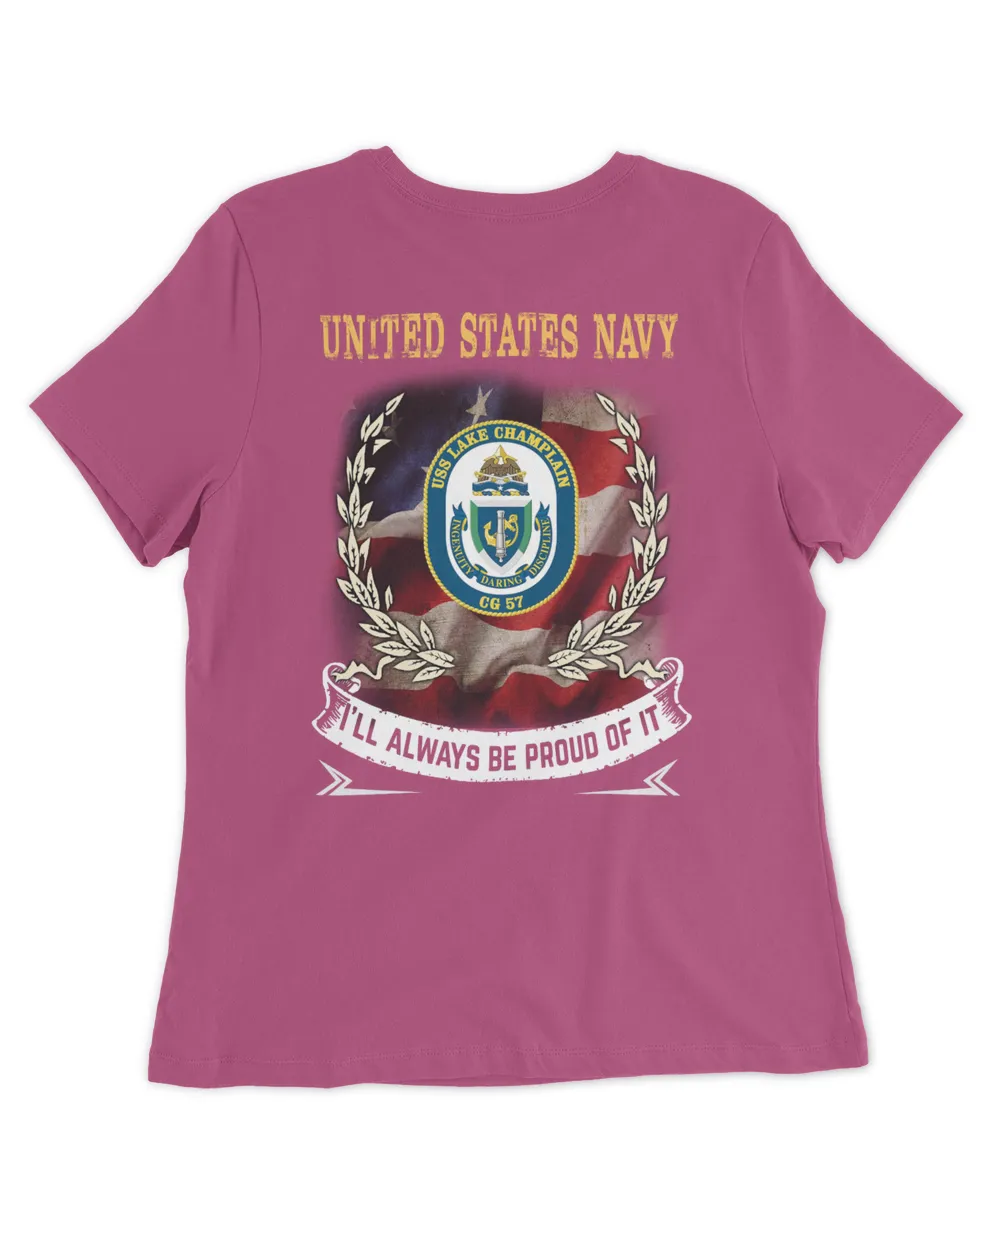 USS Lake Champlan (CG-57) Tshirt